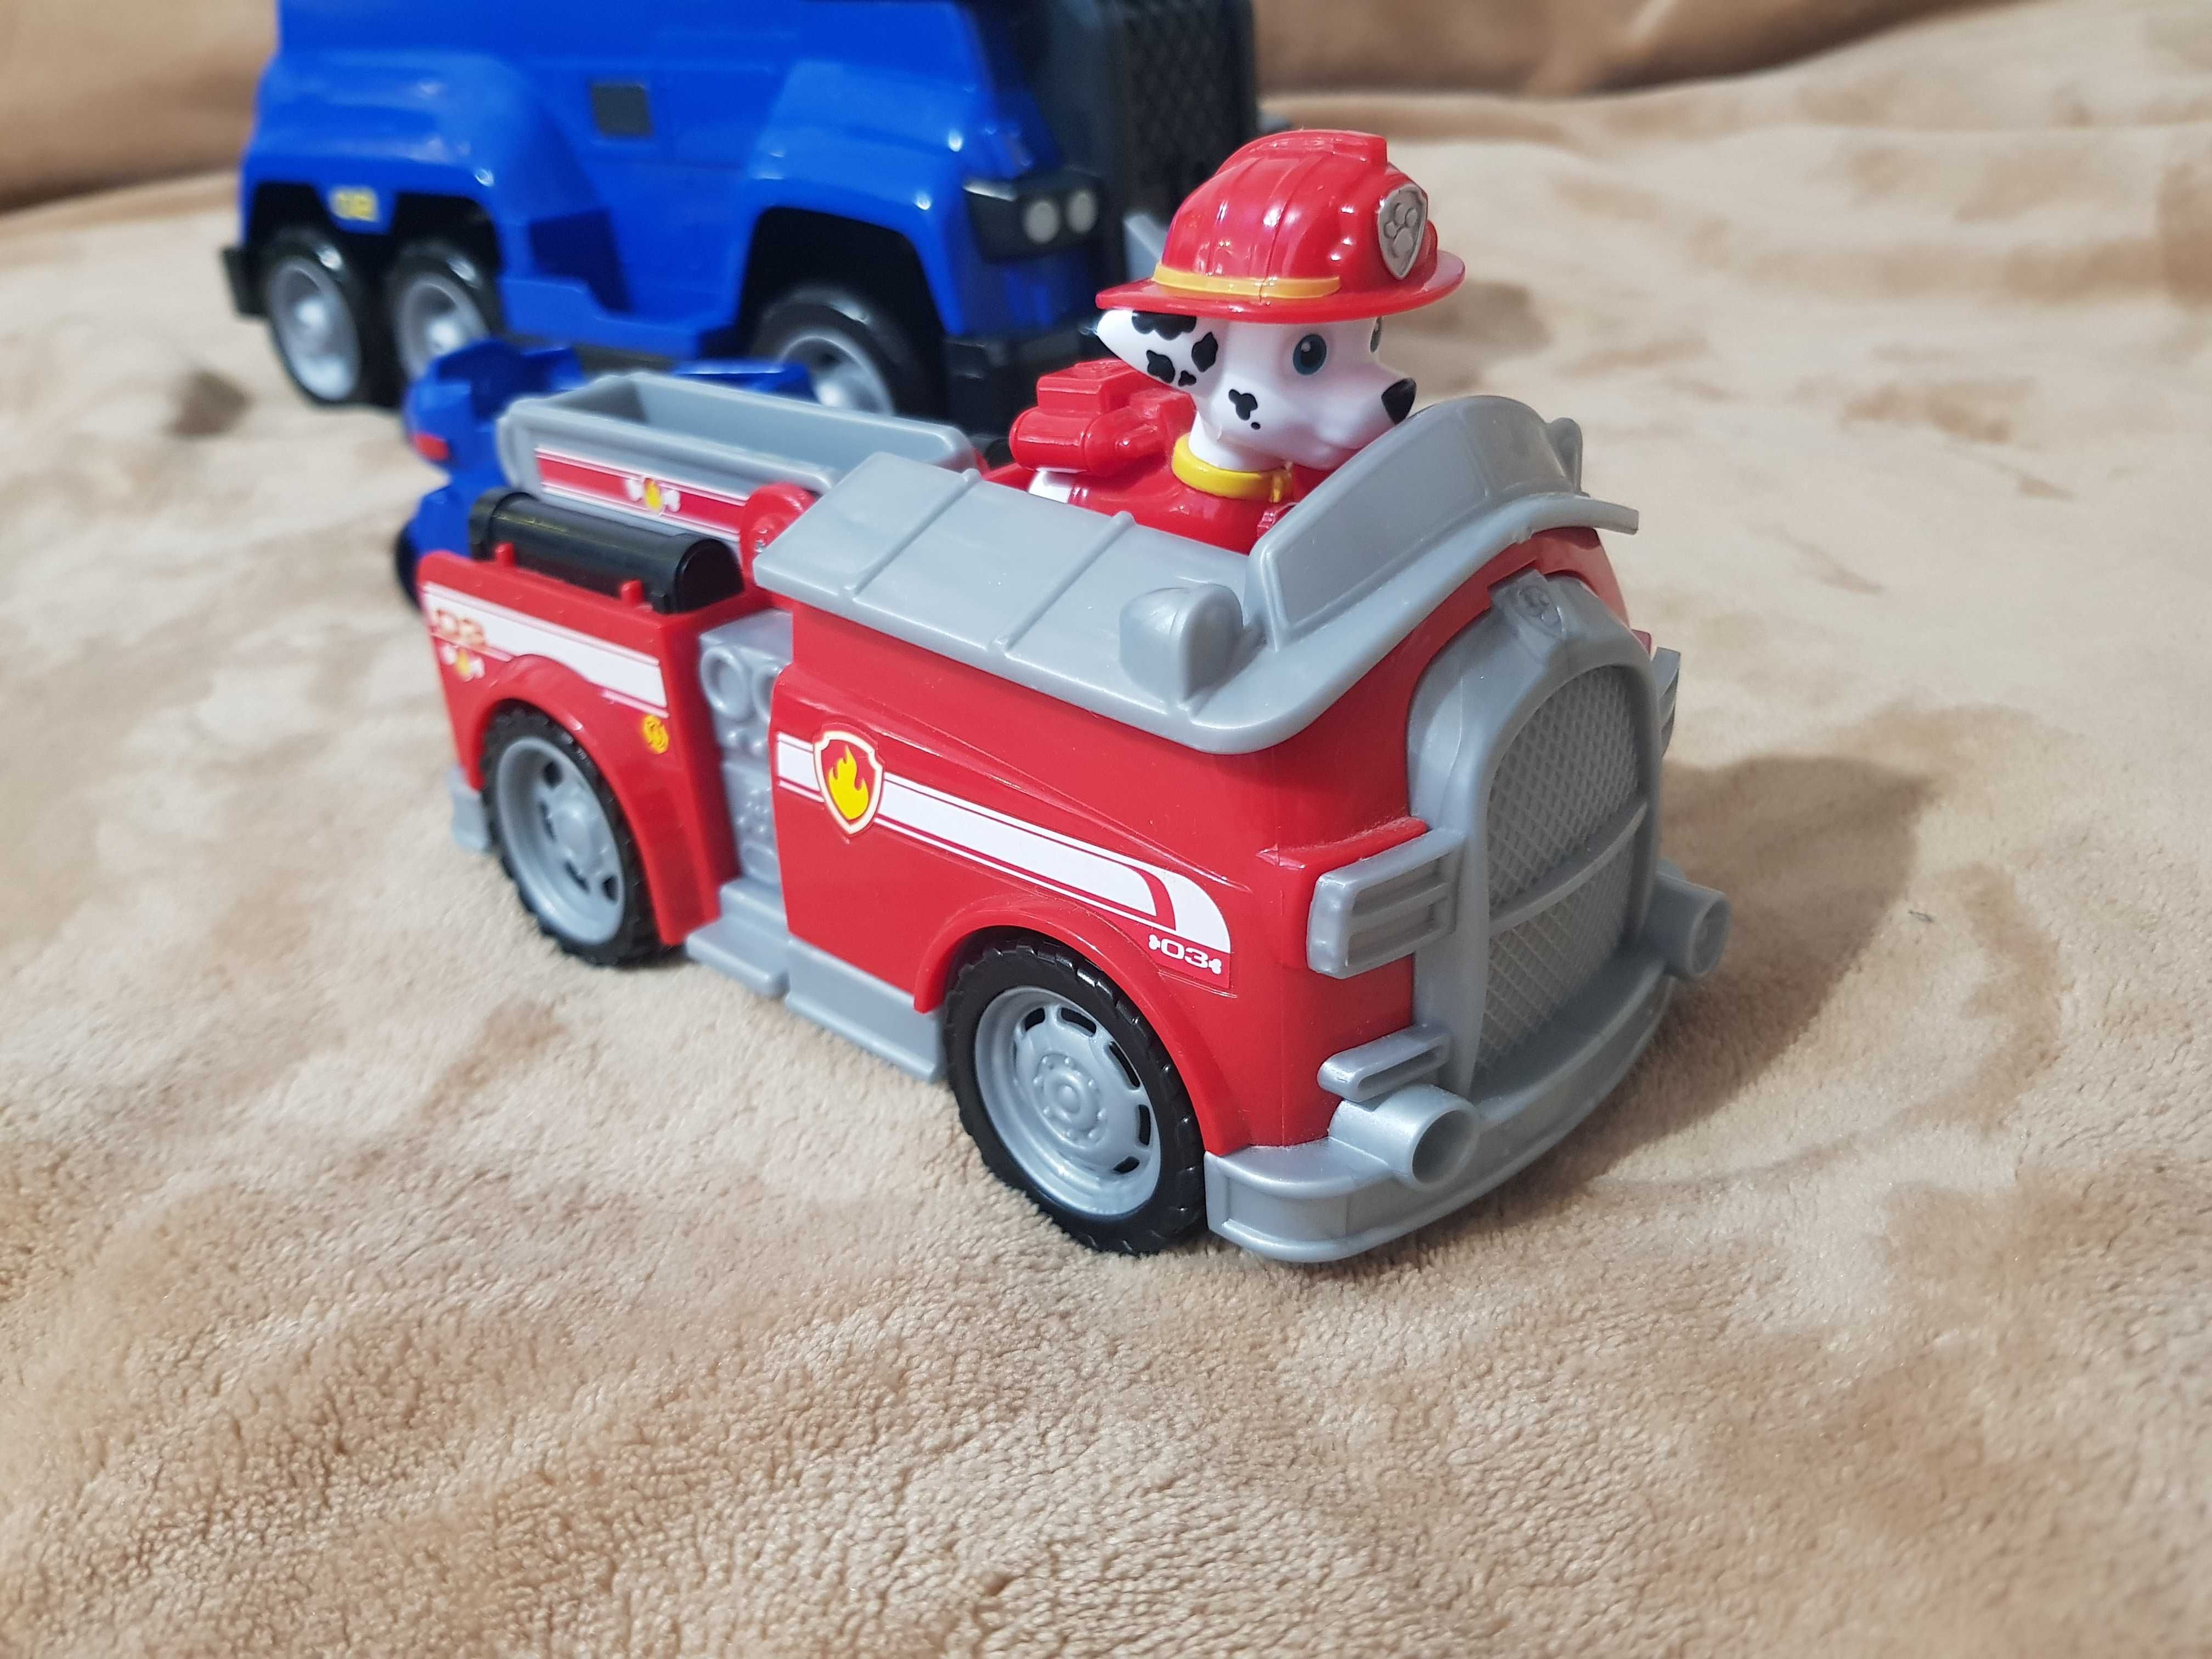 Masina de politie Paw Patrol + Masina de pompieri + Figurine